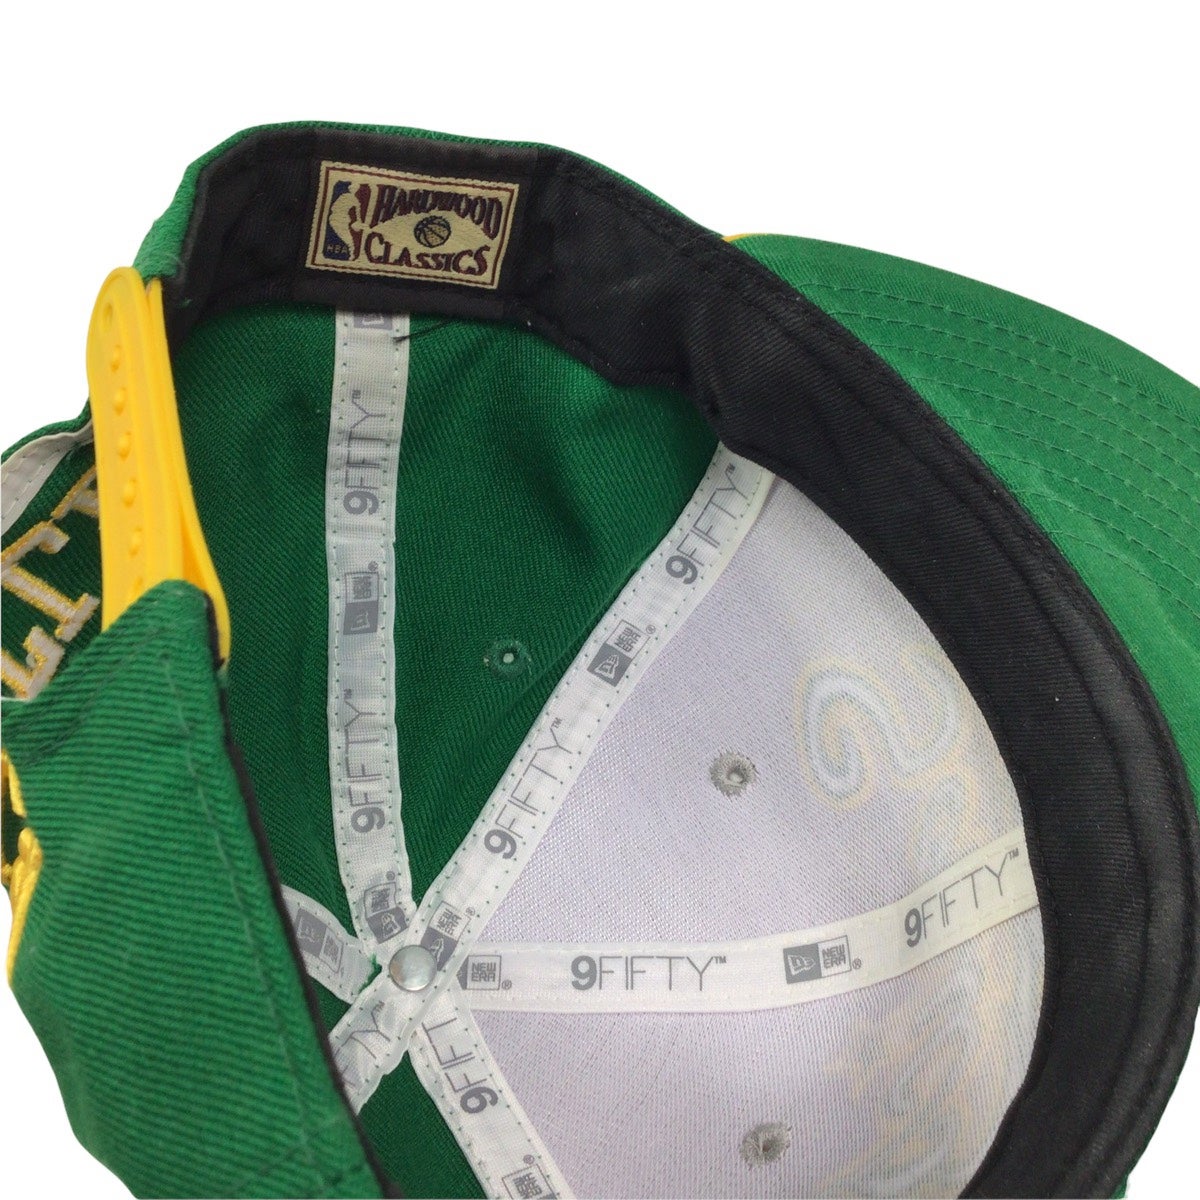 Seattle Supersonics Hat M/L Green Snapback New Era Hardwood Classics 9Fifty  NBA